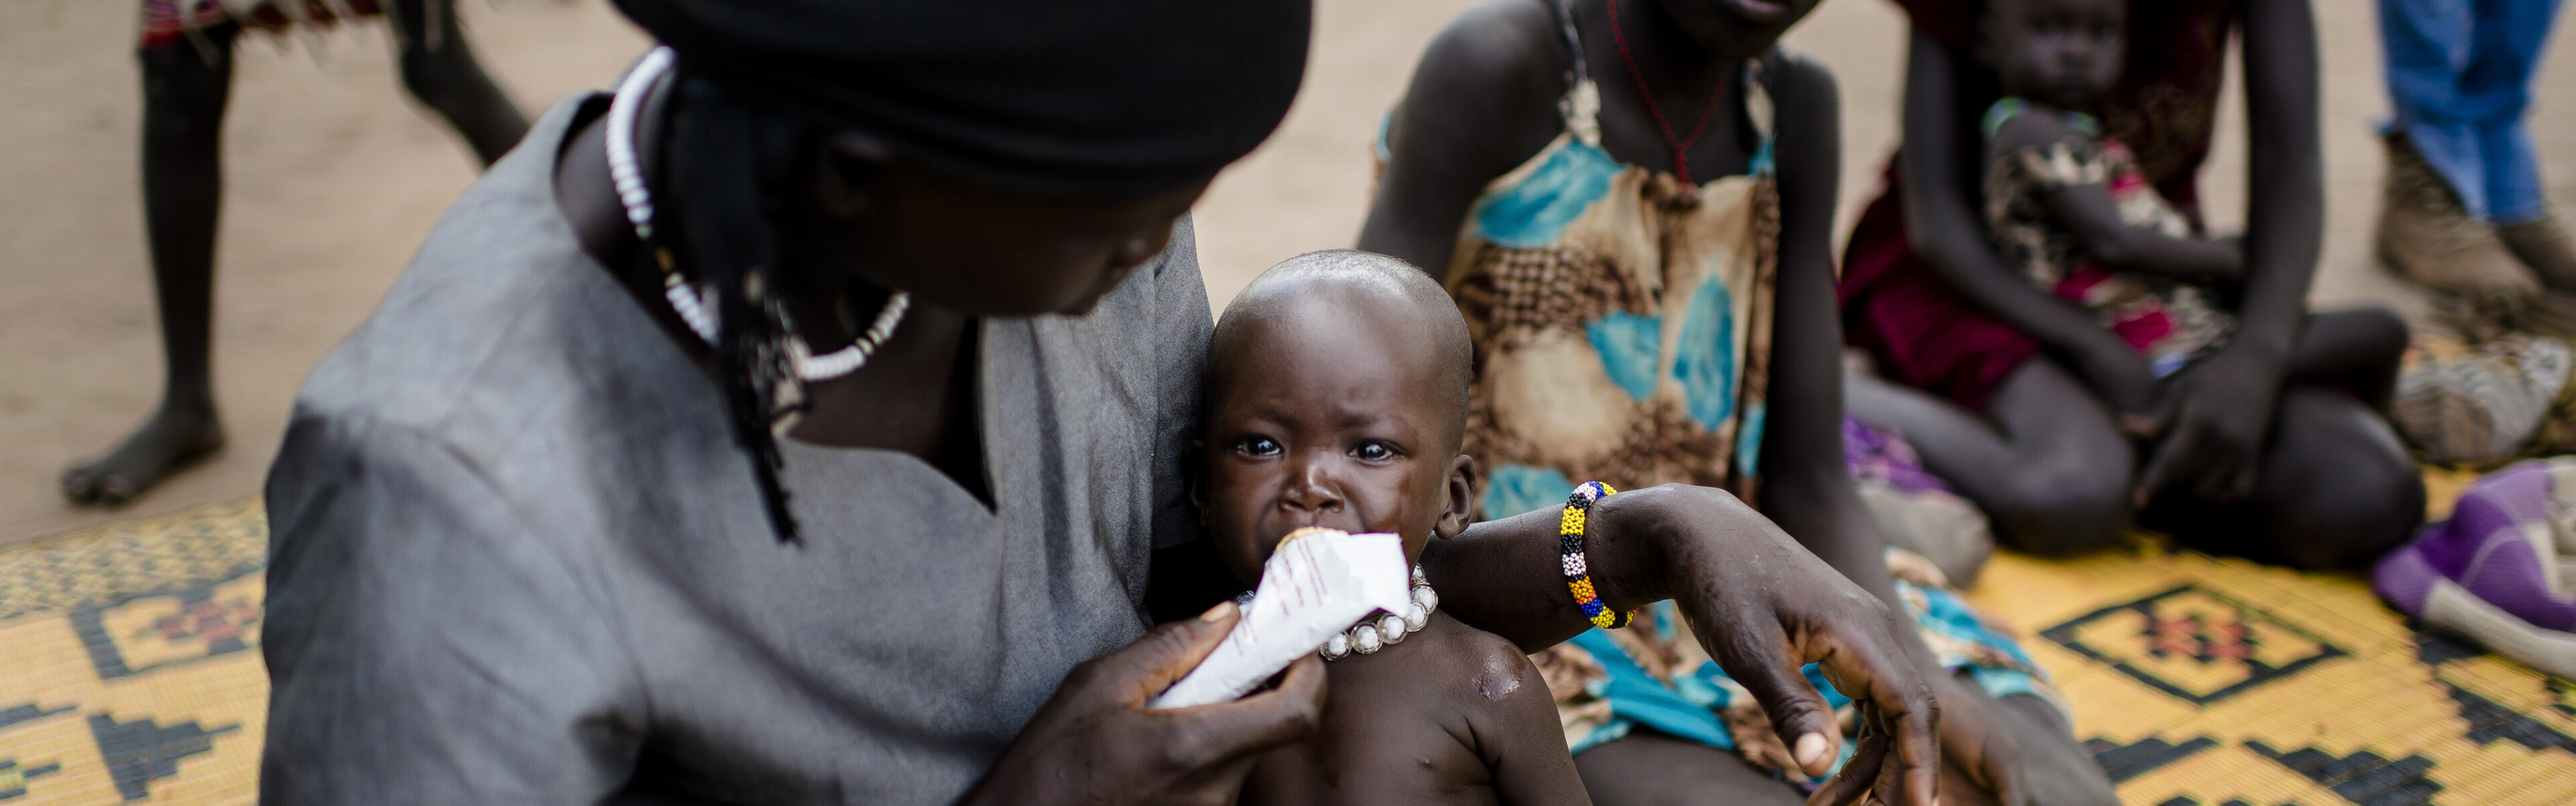 Im Südsudan versorgt eine Frau ihr unterernährtes Kind.